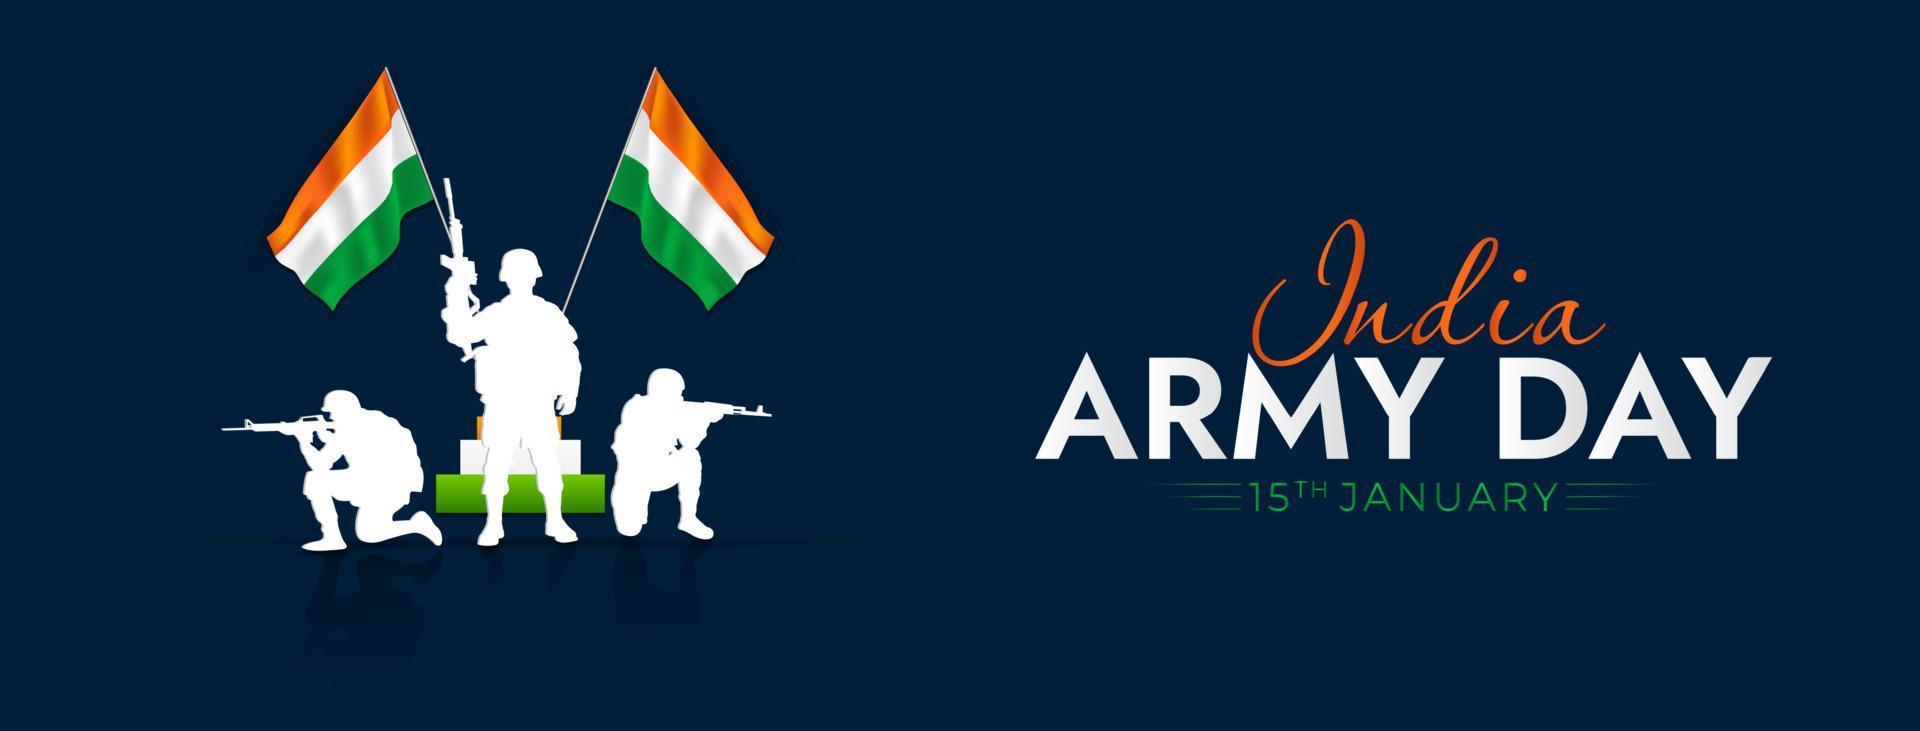 día del ejército indio 15 de enero publicación en redes sociales vector